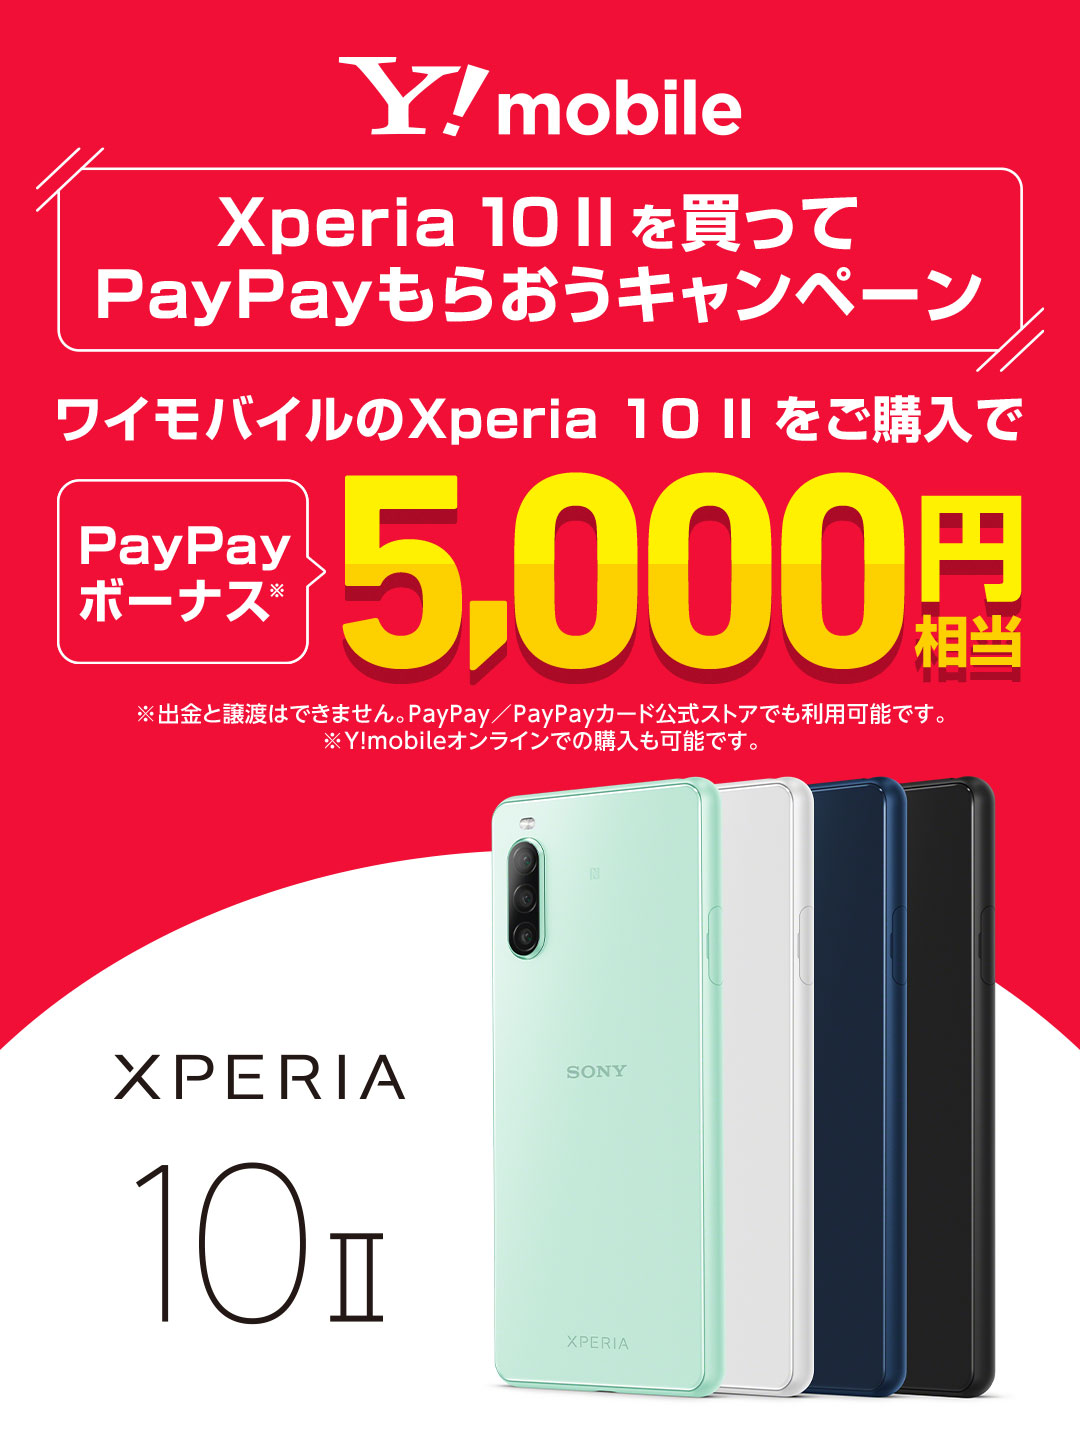 Y!mobile Xperia 10 II を買って PayPayもらおうキャンペーン ワイモバイルの Xperia 10 II をご購入で PayPayボーナス 5,000円相当 ※出金と譲渡はできません。PayPay／PayPayカード公式ストアでも利用可能です。※Y!mobileオンラインでの購入も可能です。